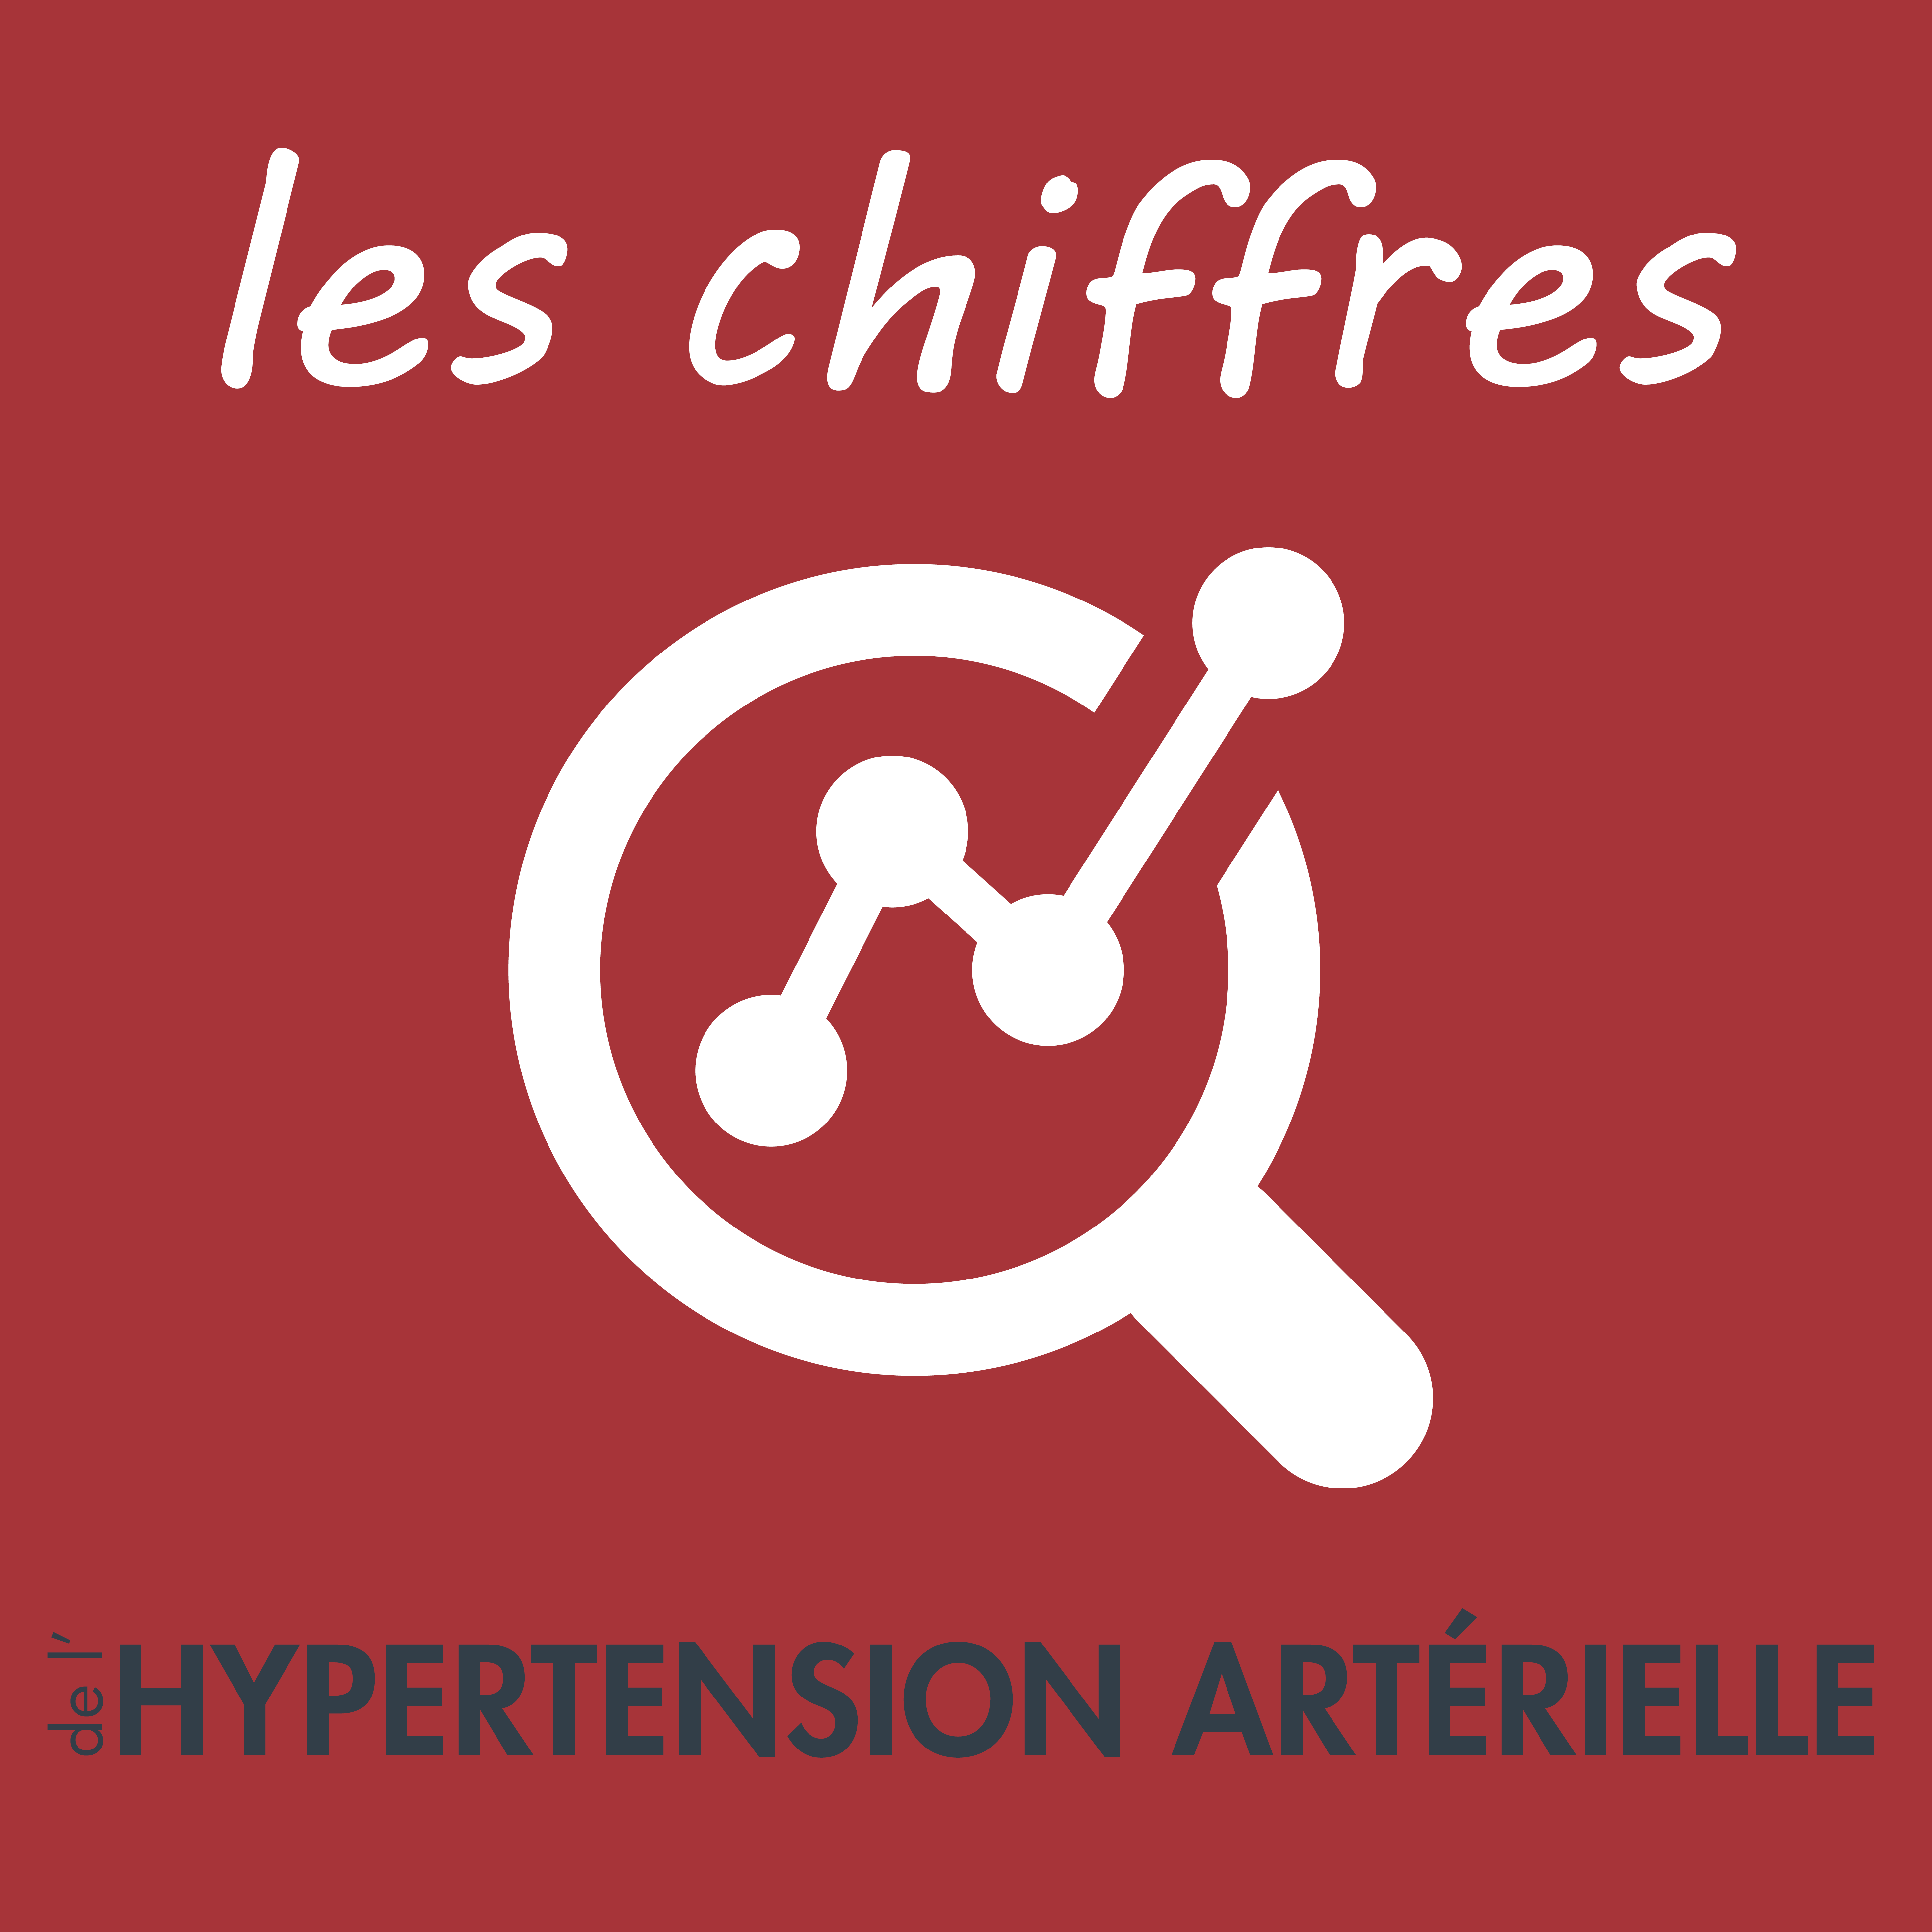 Conseils du Pr Xavier Girerd,Hypertension artérielle,soigner l'hypertension,vivre avec l'hypertension,traiter l'hypertension,causes et risques de l'hypertension,autotest tension